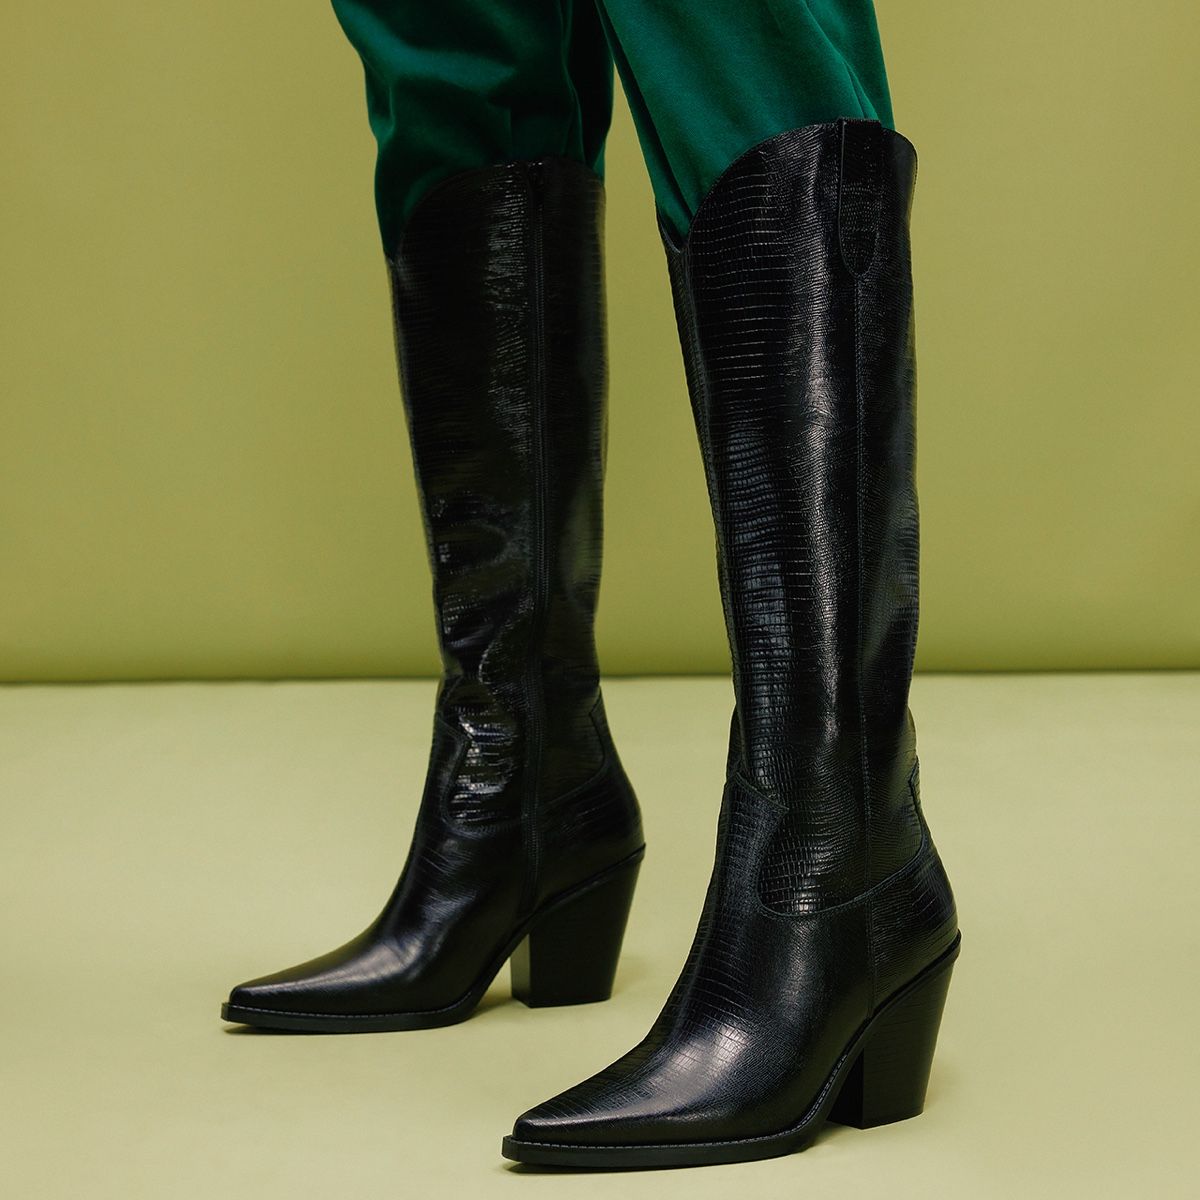 Nevada Black Women's Casual boots | ALDO Canada